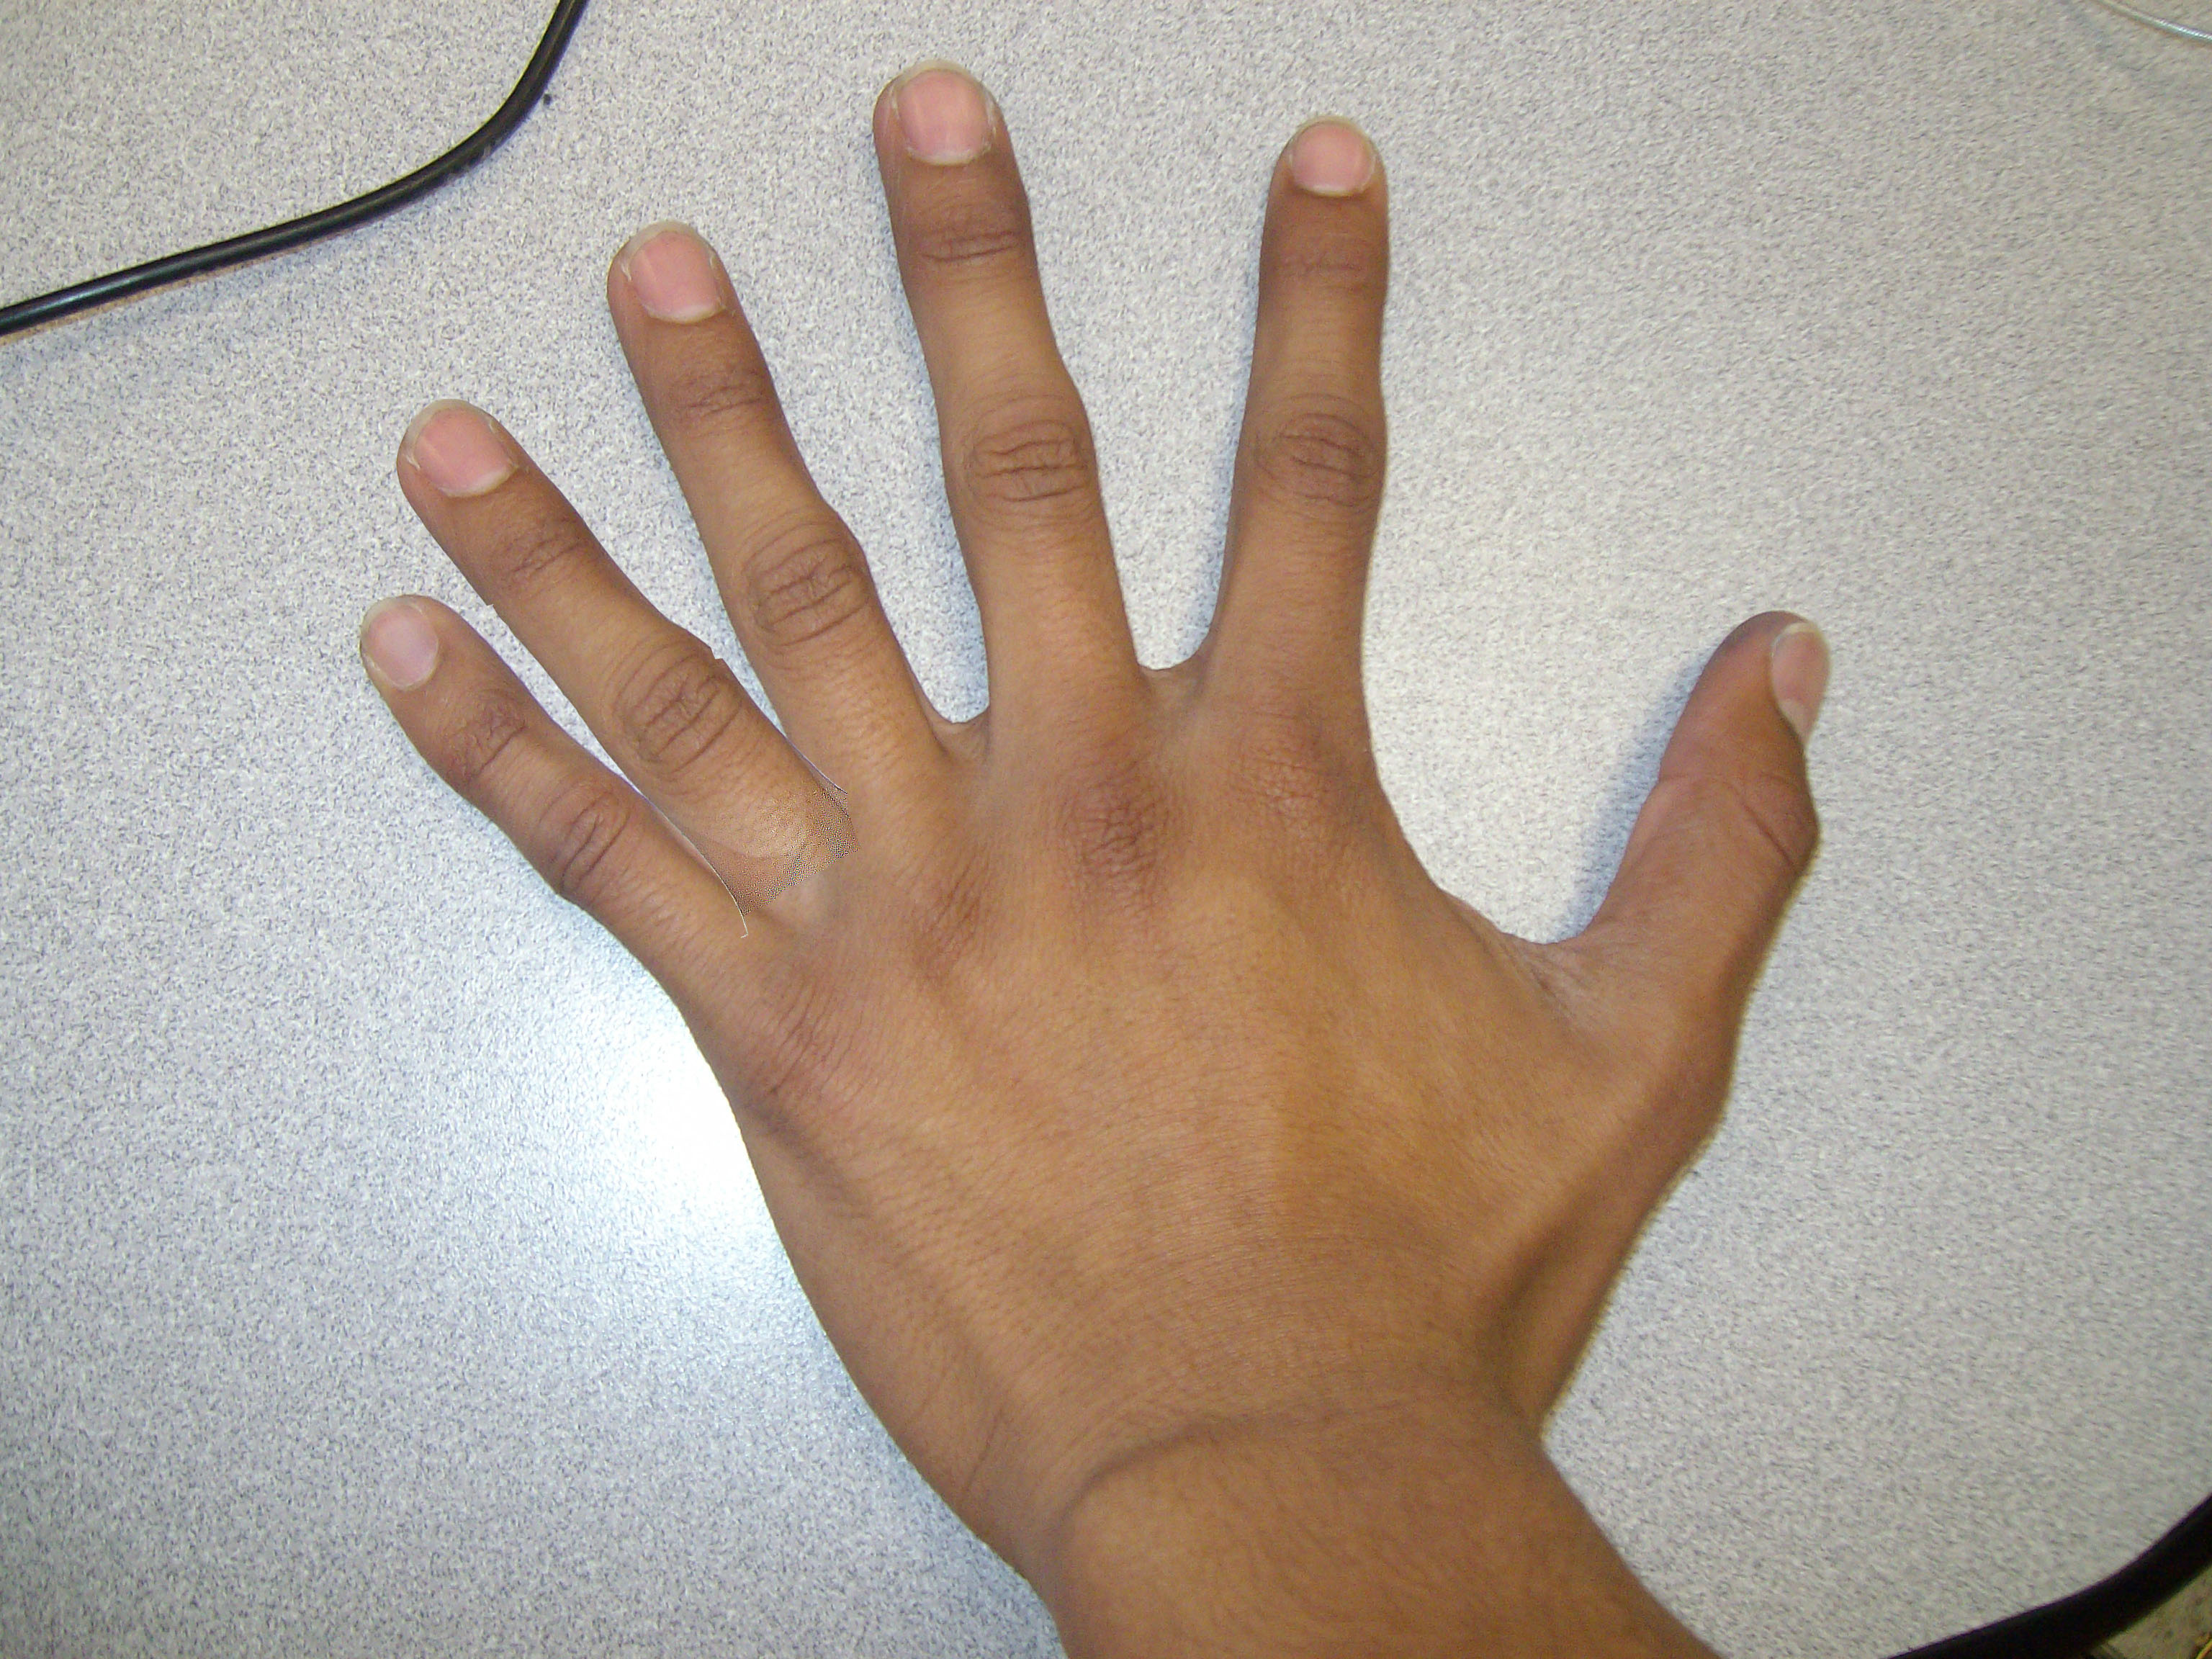 На 1 руке 6 пальцев. Полидактилия верхних конечностей. Полидактилия шестипалость.